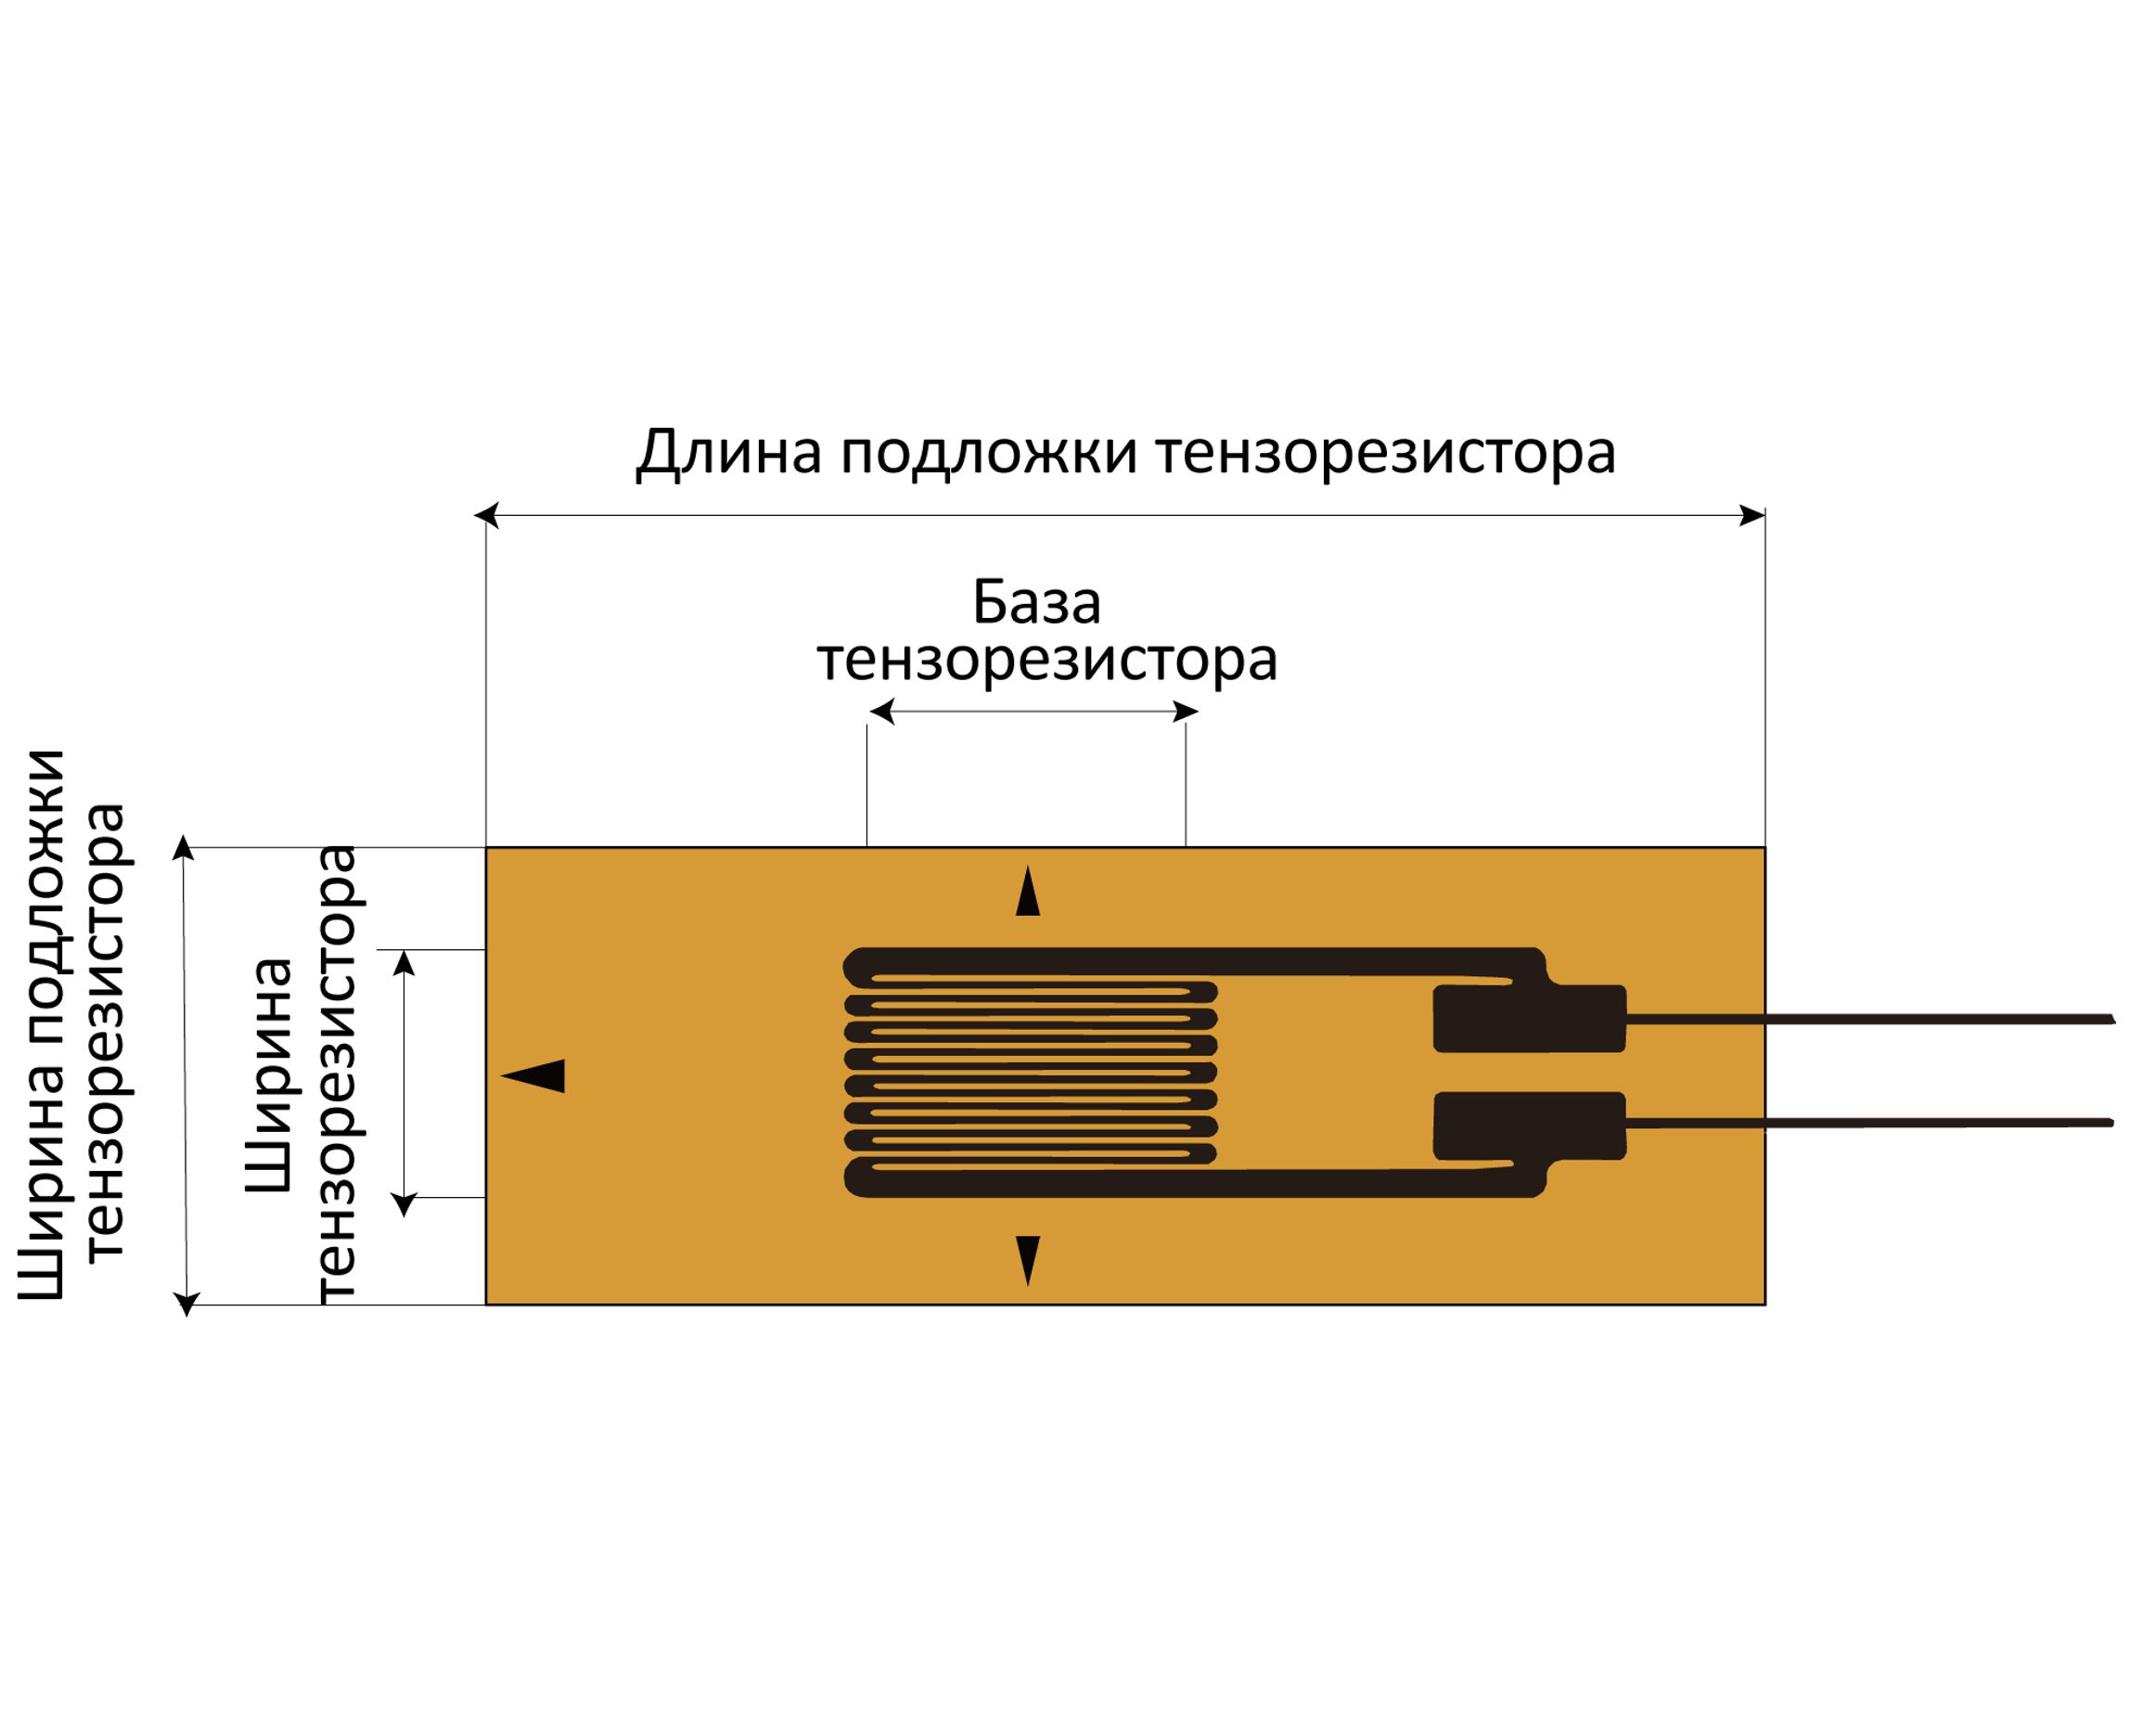 Тензорезисторы YHFLA для деформации до 40%